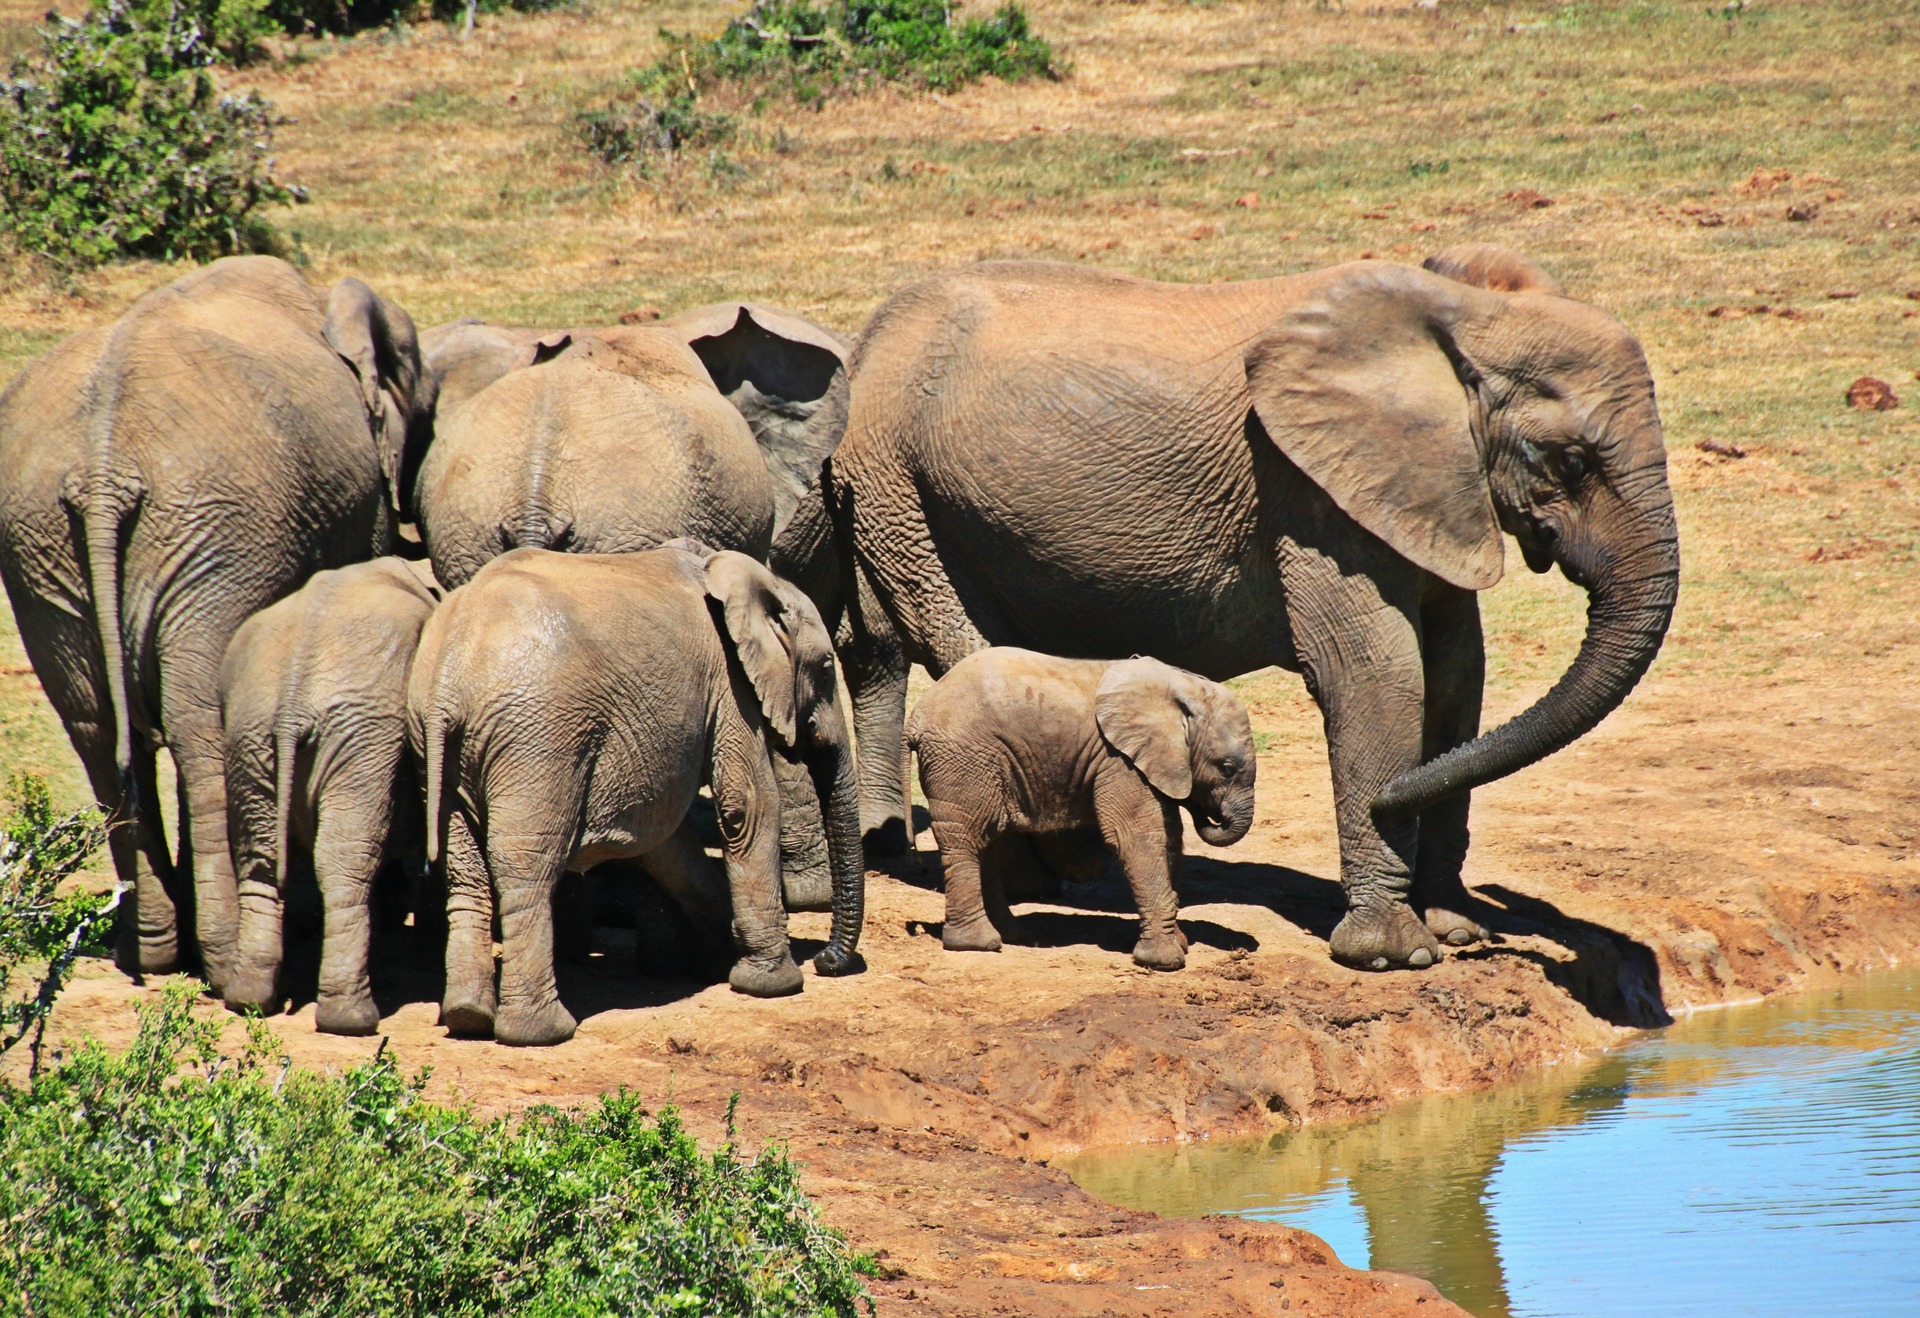 Top 5 Wildlife Destinations in Africa